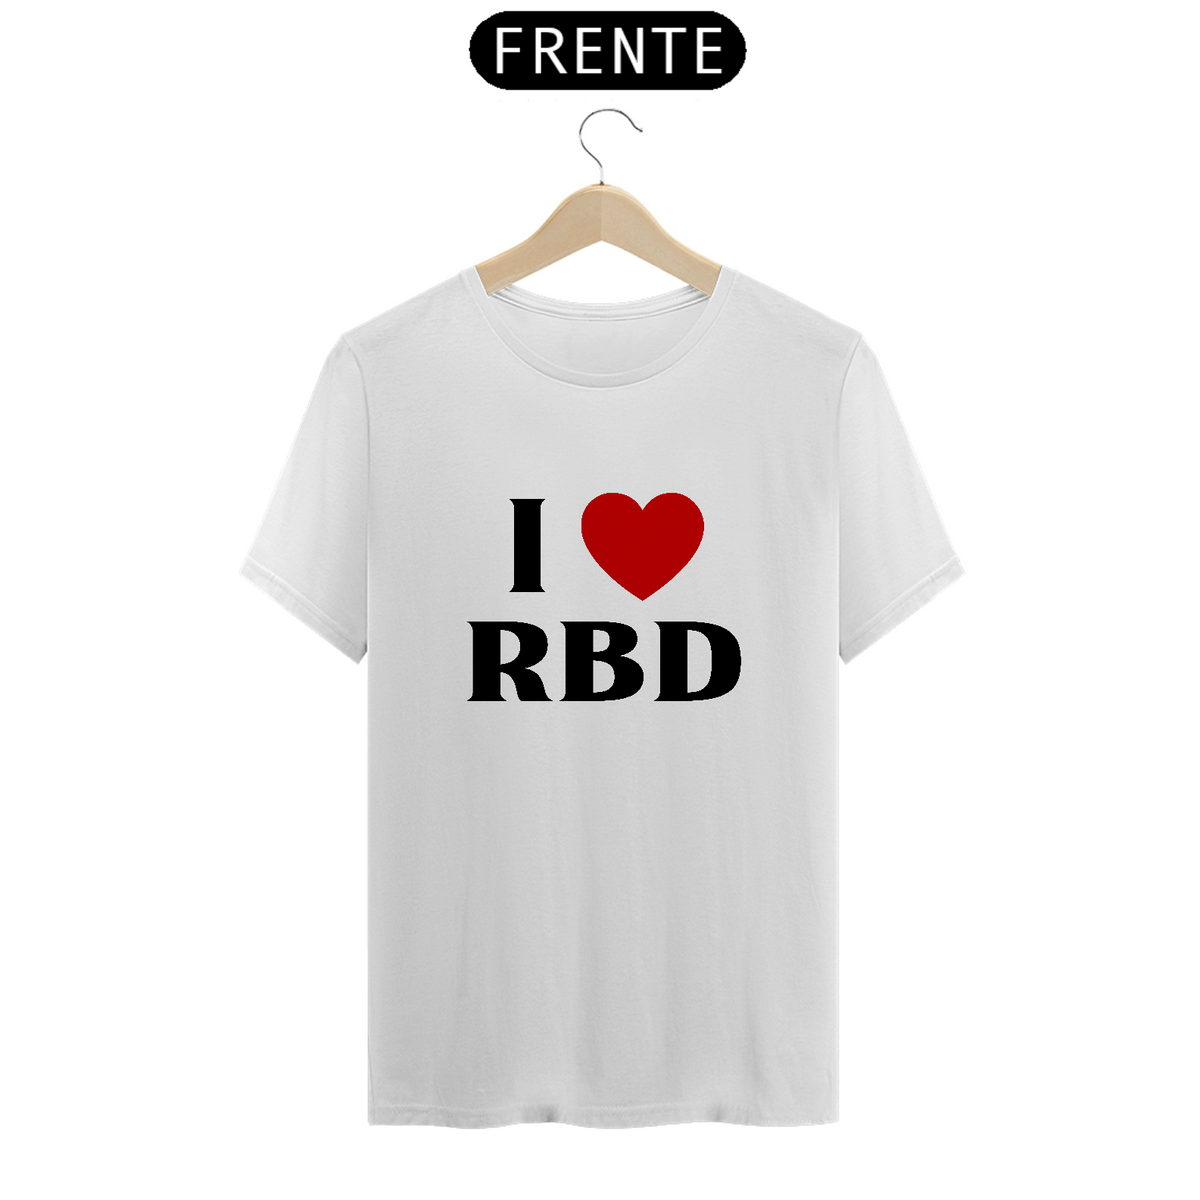 Nome do produto: Camiseta Unissex - RBD I >3 RBD 